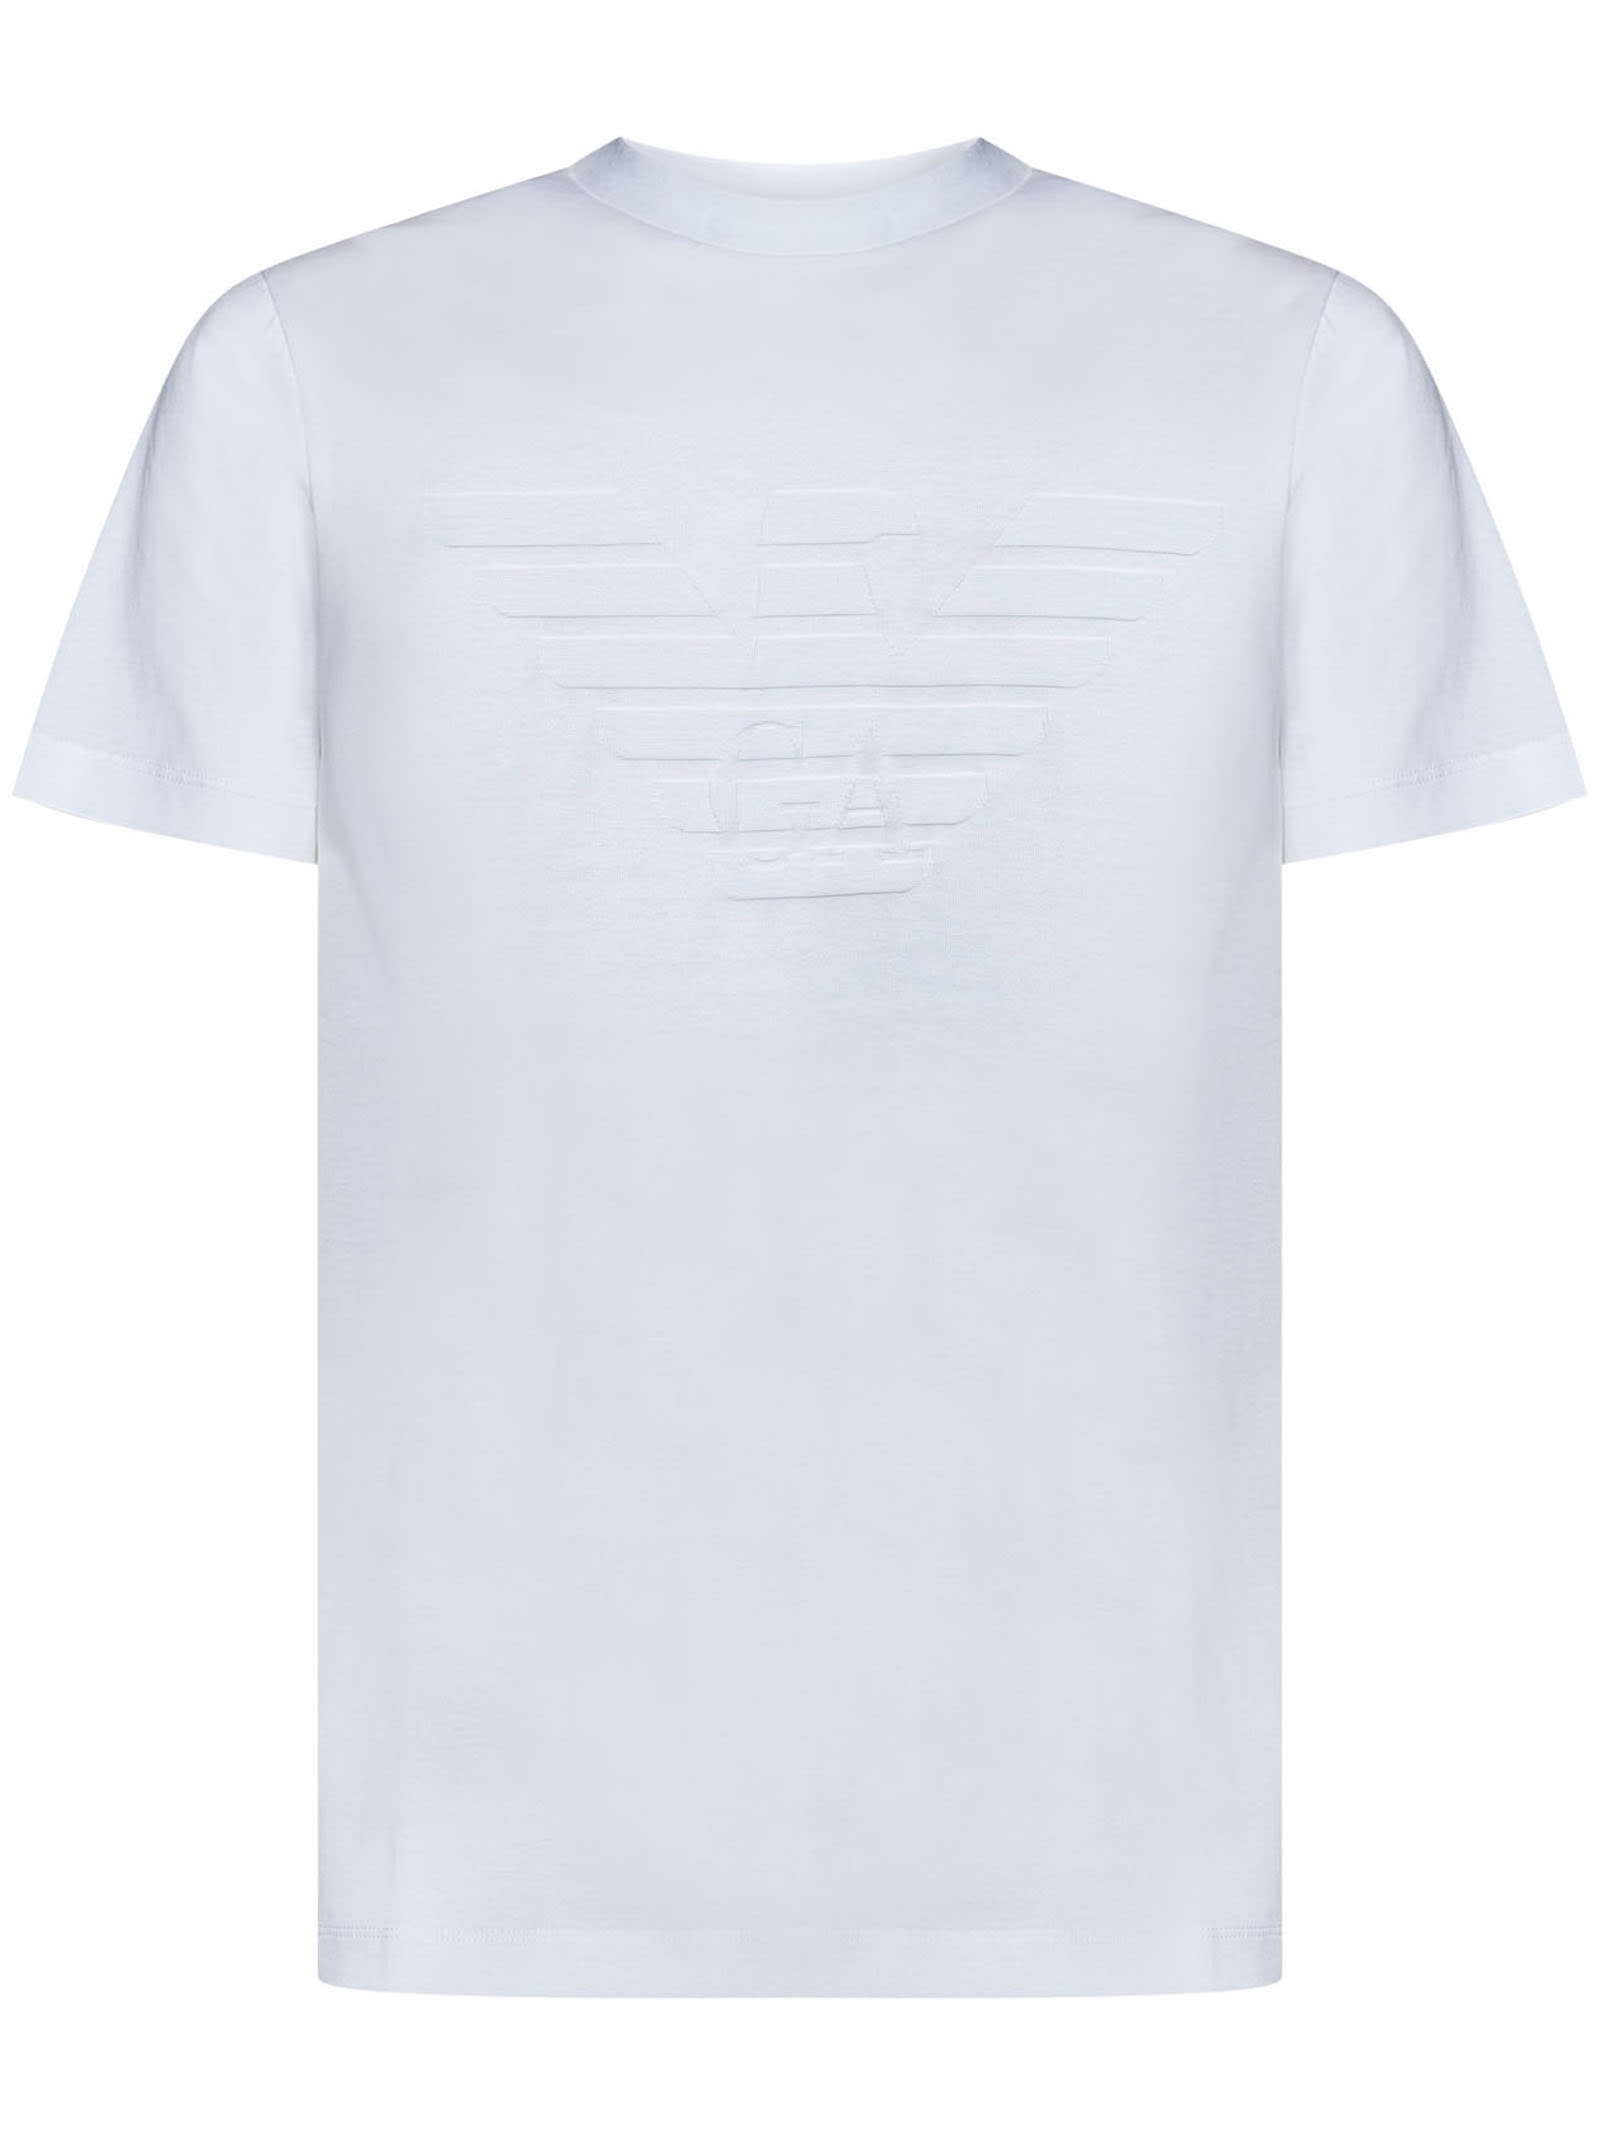 Shop Emporio Armani T-shirt In Bianco Ottico Aquila